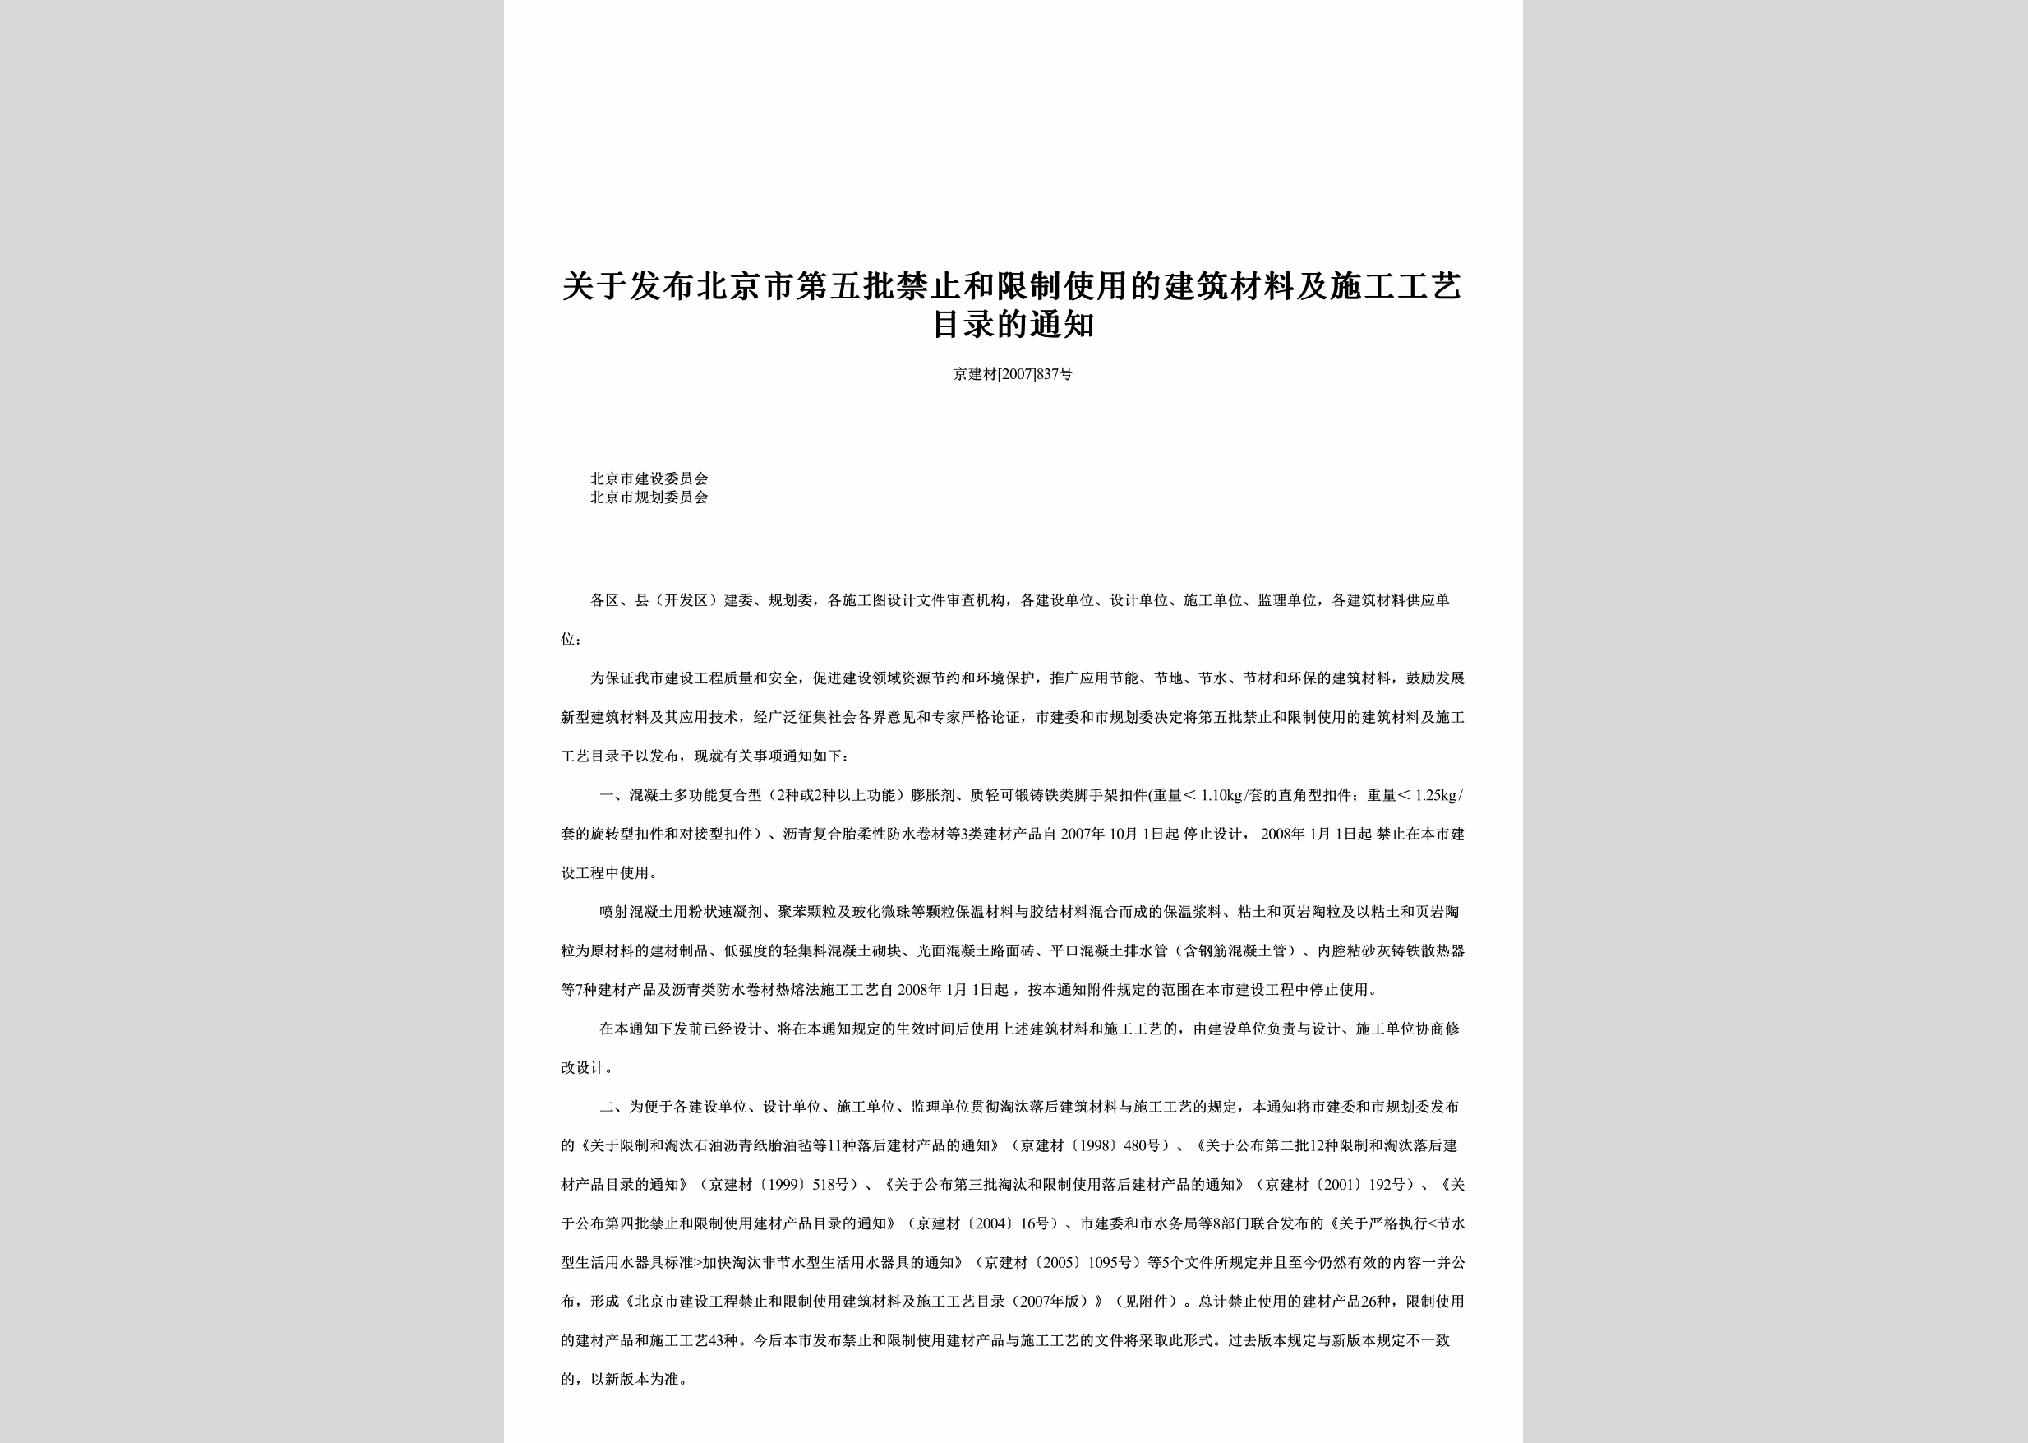 京建材[2007]837号：关于发布北京市第五批禁止和限制使用的建筑材料及施工工艺目录的通知